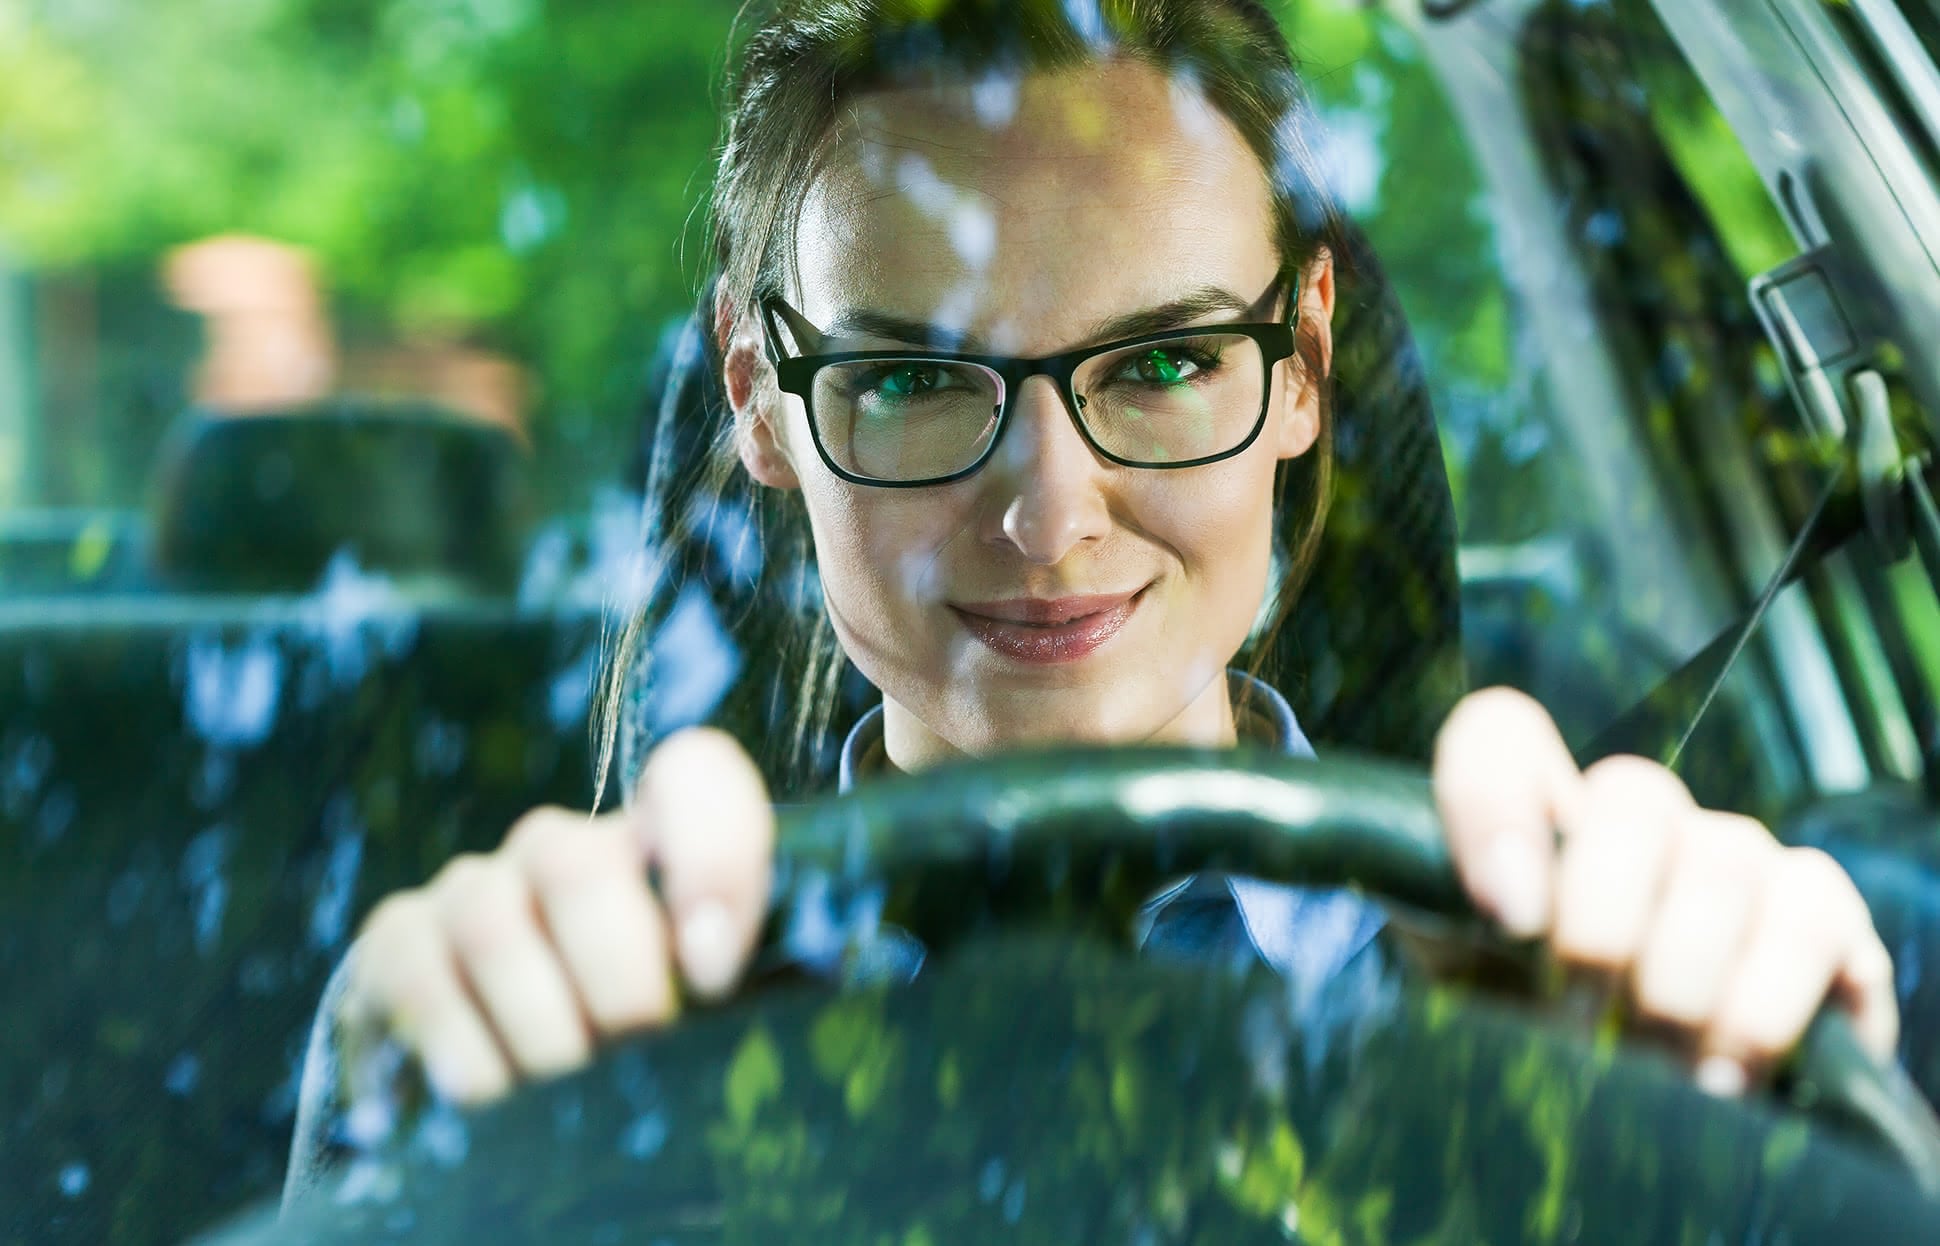 Brillen für Autofahrer – sicher und cool